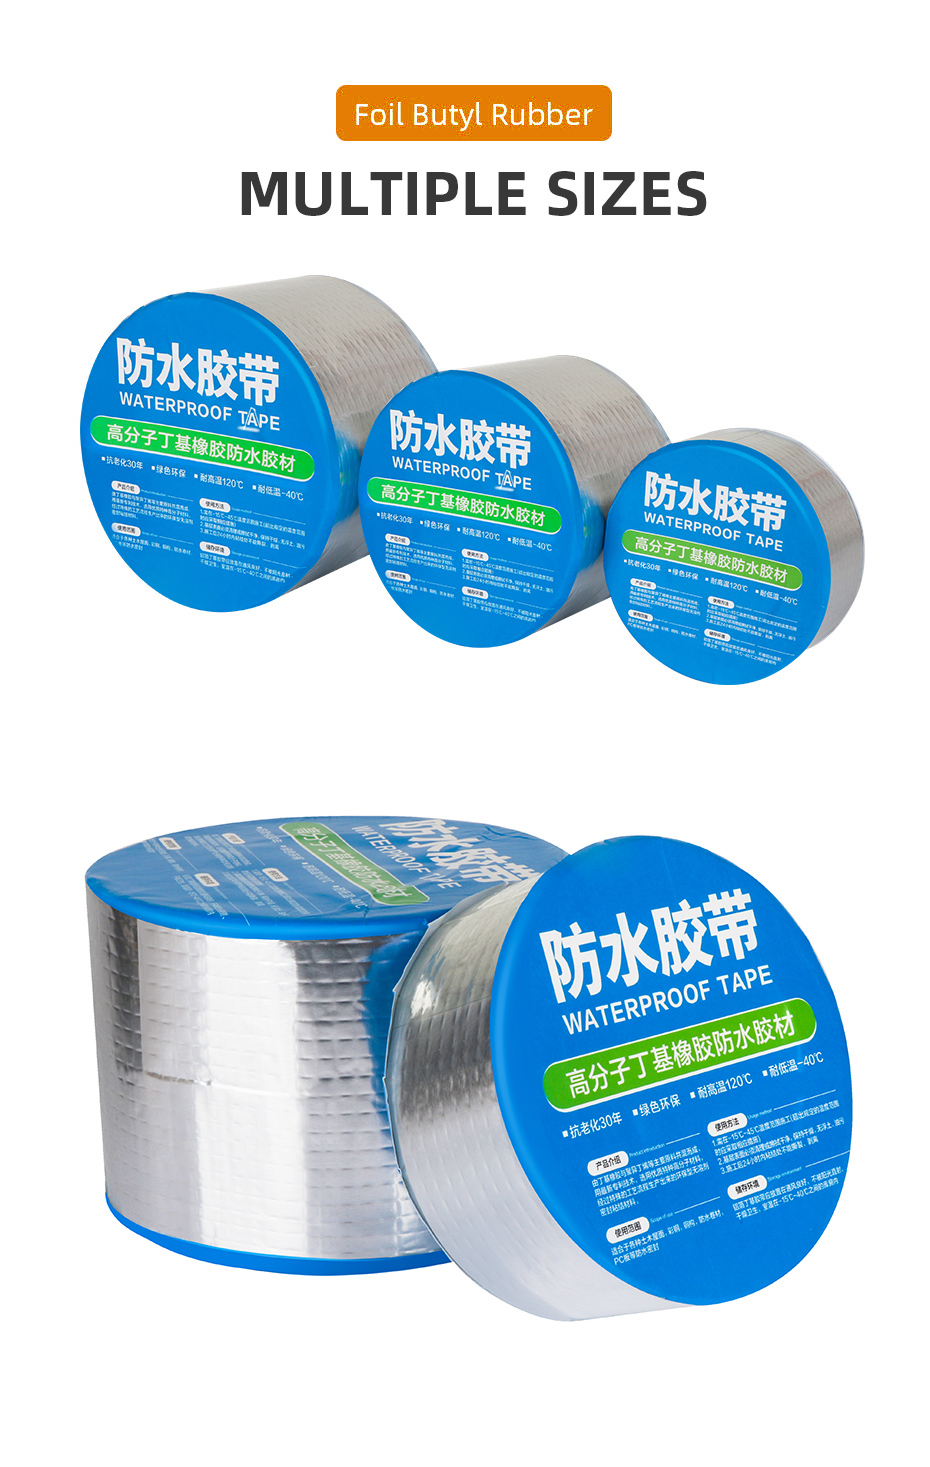 Hot luminum Foil Butyl Rubber Tape Self Adhesive High Temperature Resistance Waterproof For Roof Pipe Repair Stop Leak Wall Tape